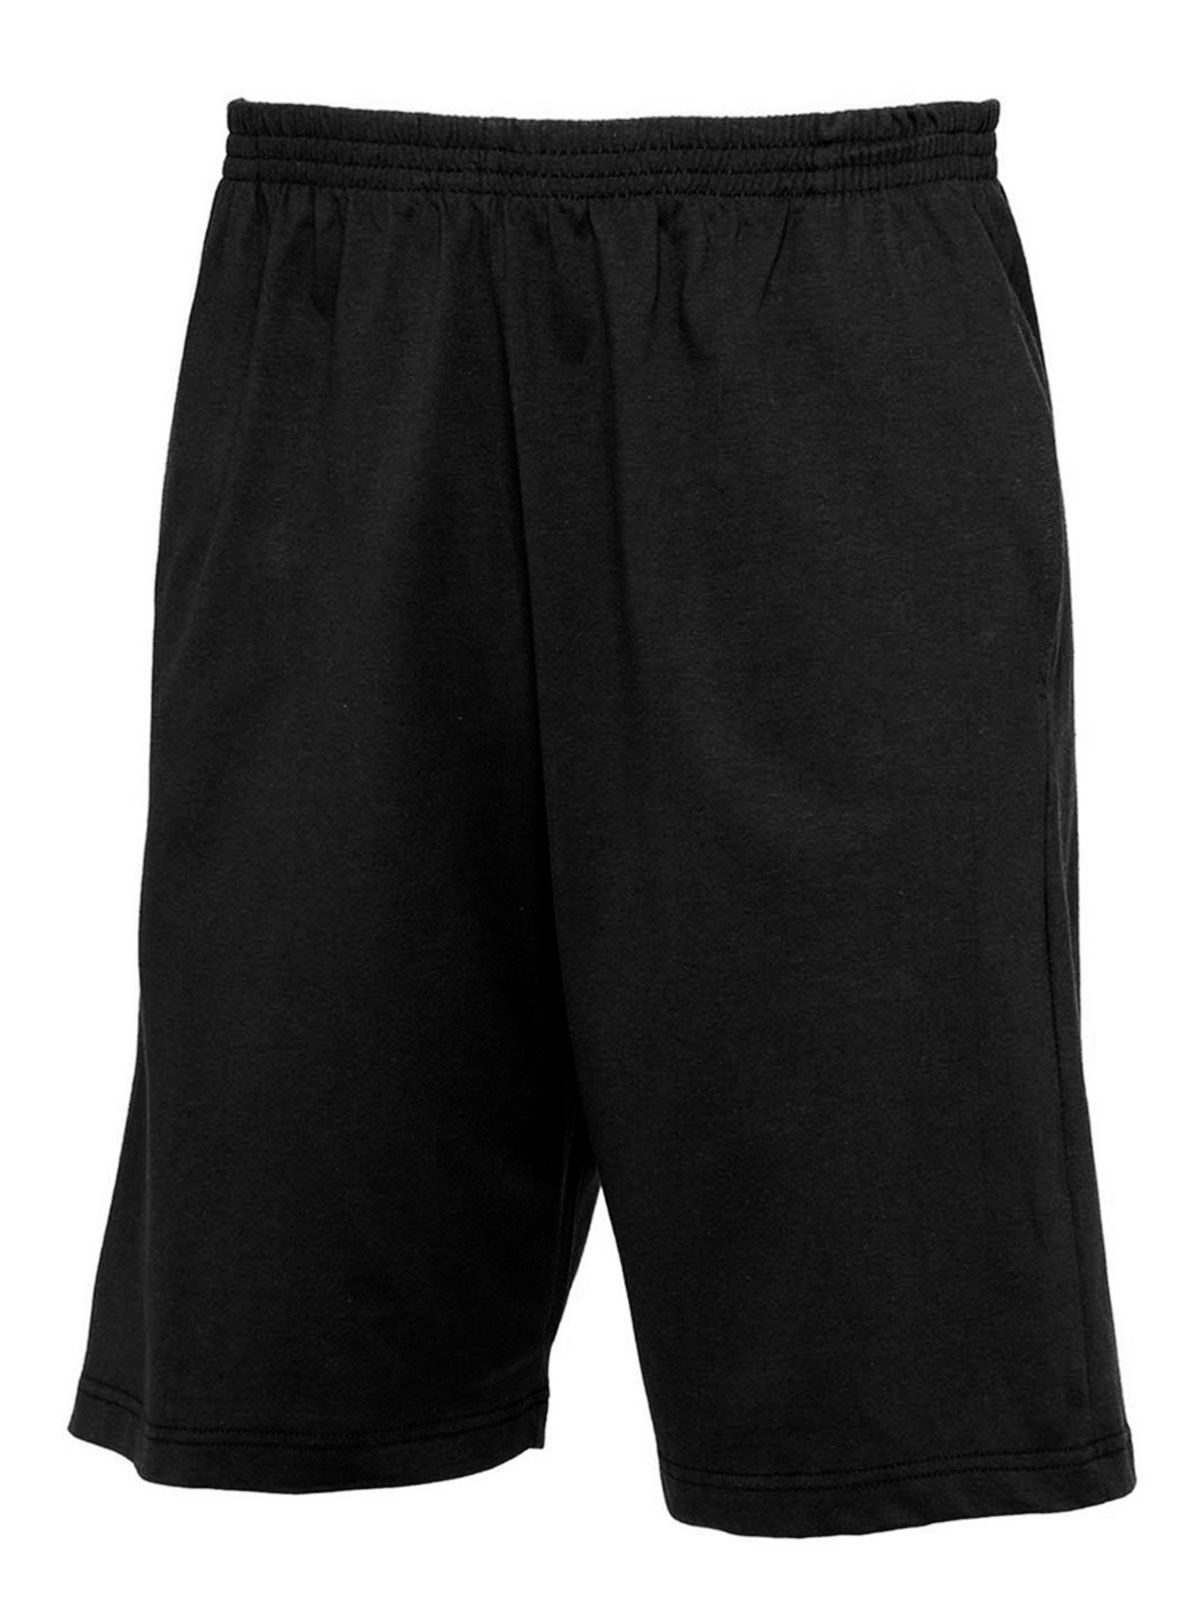 B&C Pantaloni Shorts Move - BCTM202